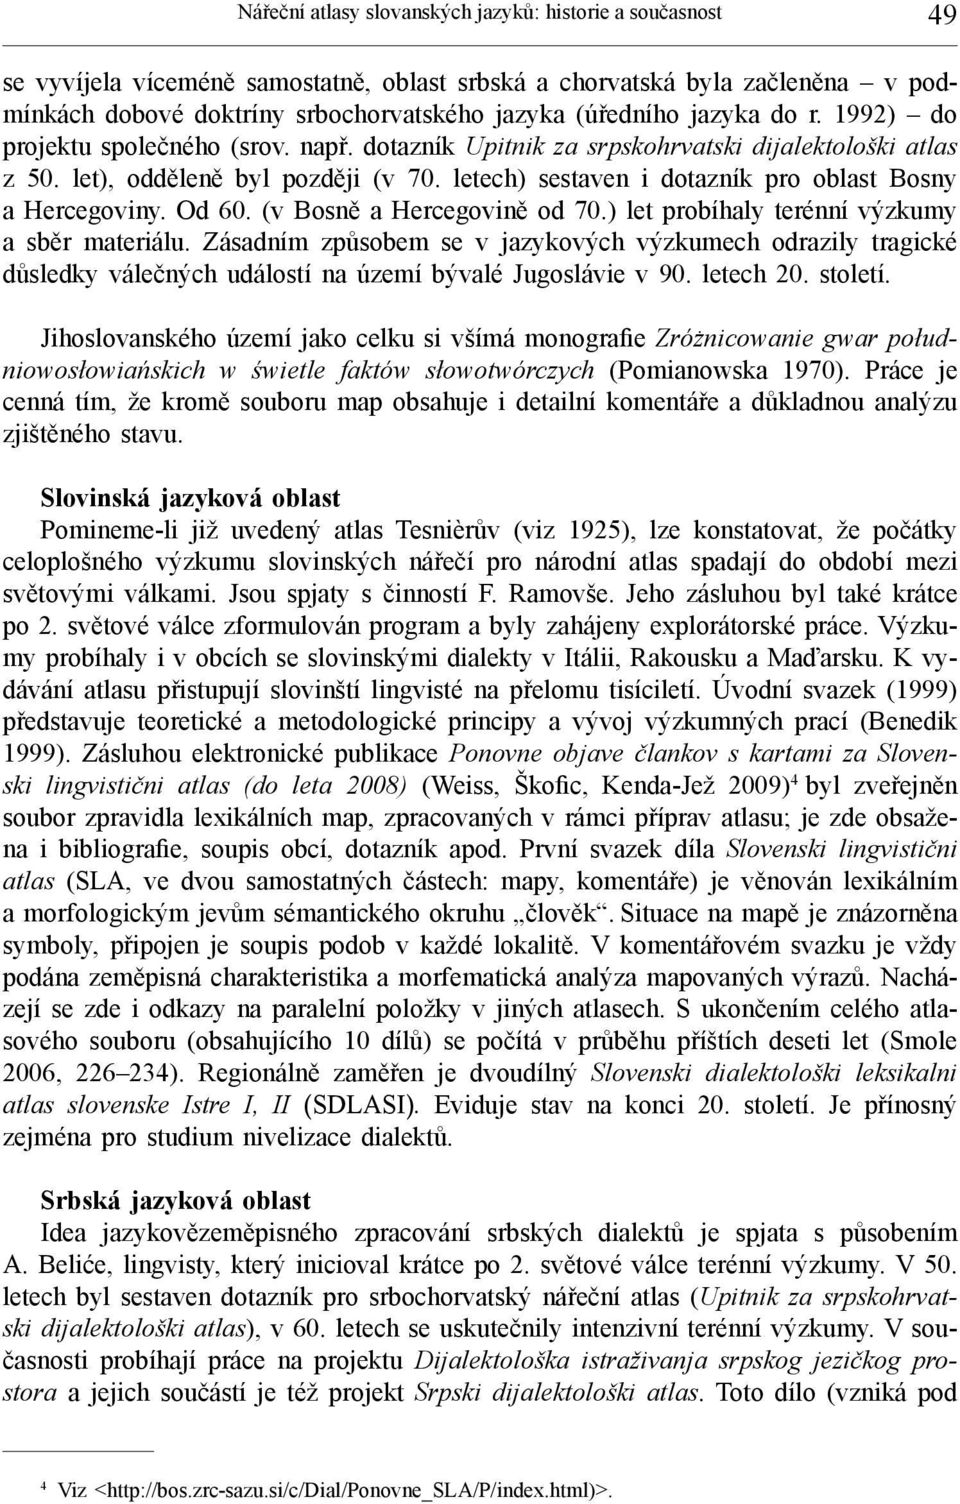 letech) sestaven i dotazník pro oblast Bosny a Hercegoviny. Od 60. (v Bosně a Hercegovině od 70.) let probíhaly terénní výzkumy a sběr materiálu.